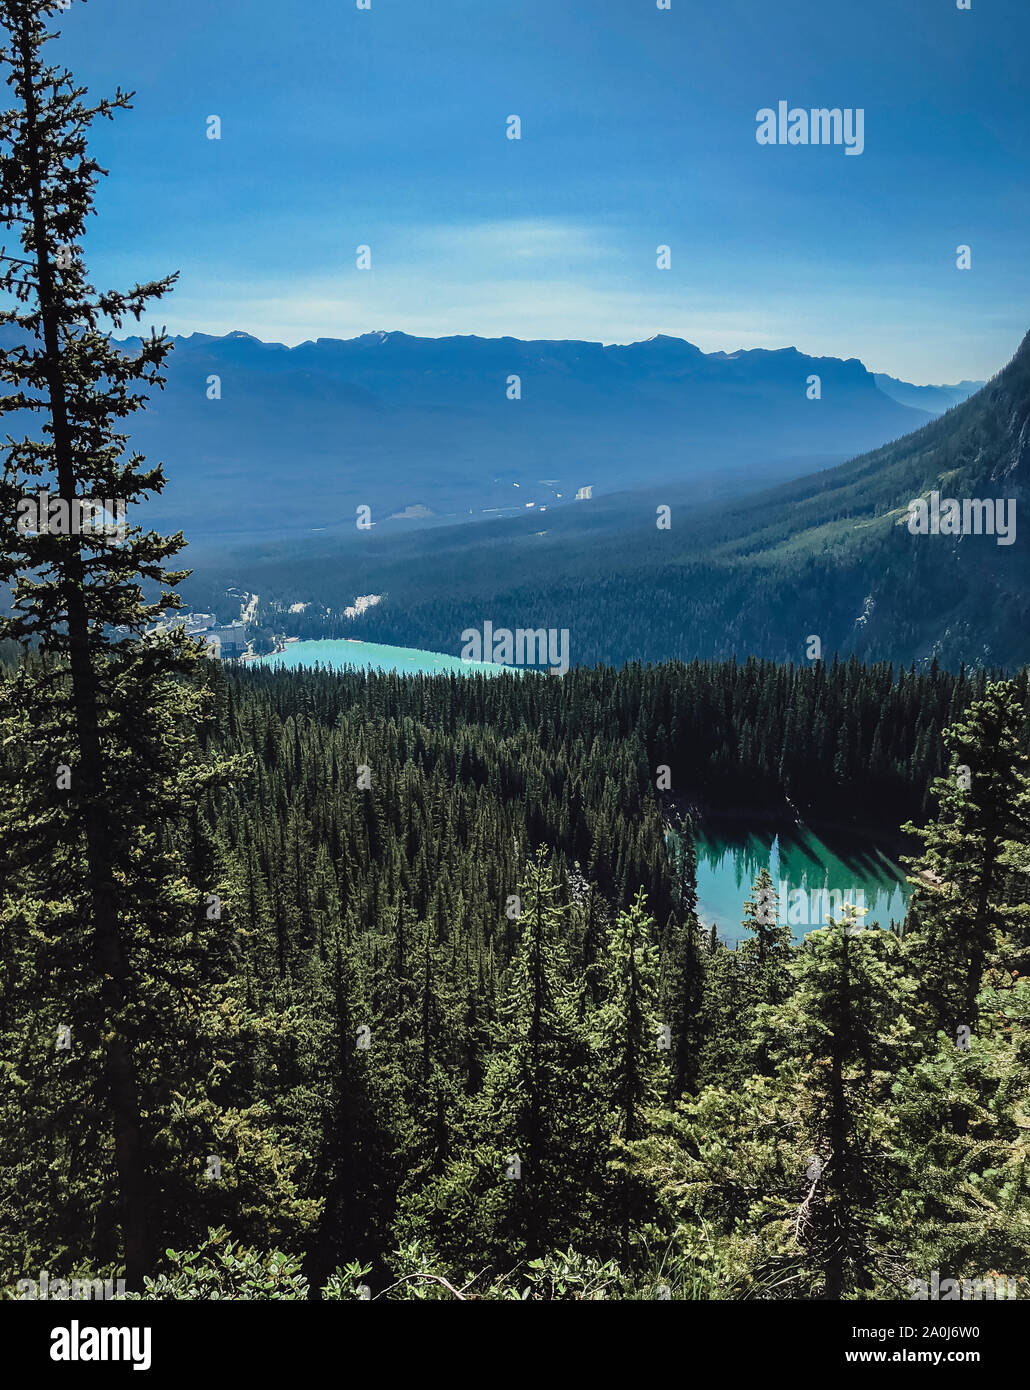 Vista de lagos, bosques y montañas en Banff desde lo alto. Foto de stock